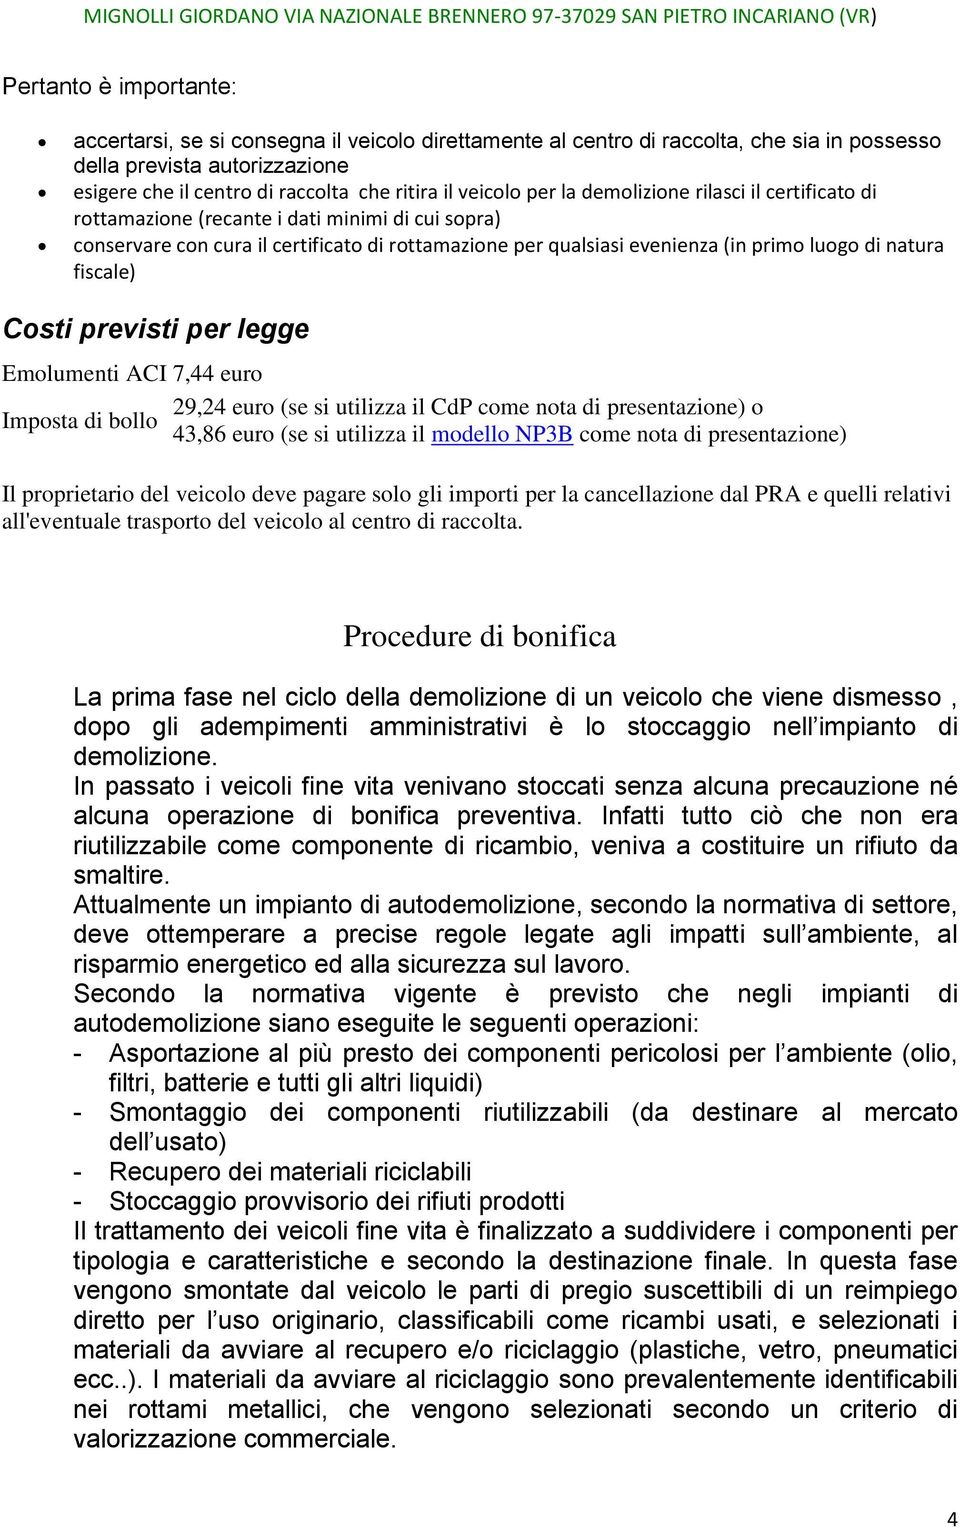 natura fiscale) Costi previsti per legge Emolumenti ACI 7,44 euro 29,24 euro (se si utilizza il CdP come nota di presentazione) o Imposta di bollo 43,86 euro (se si utilizza il modello NP3B come nota